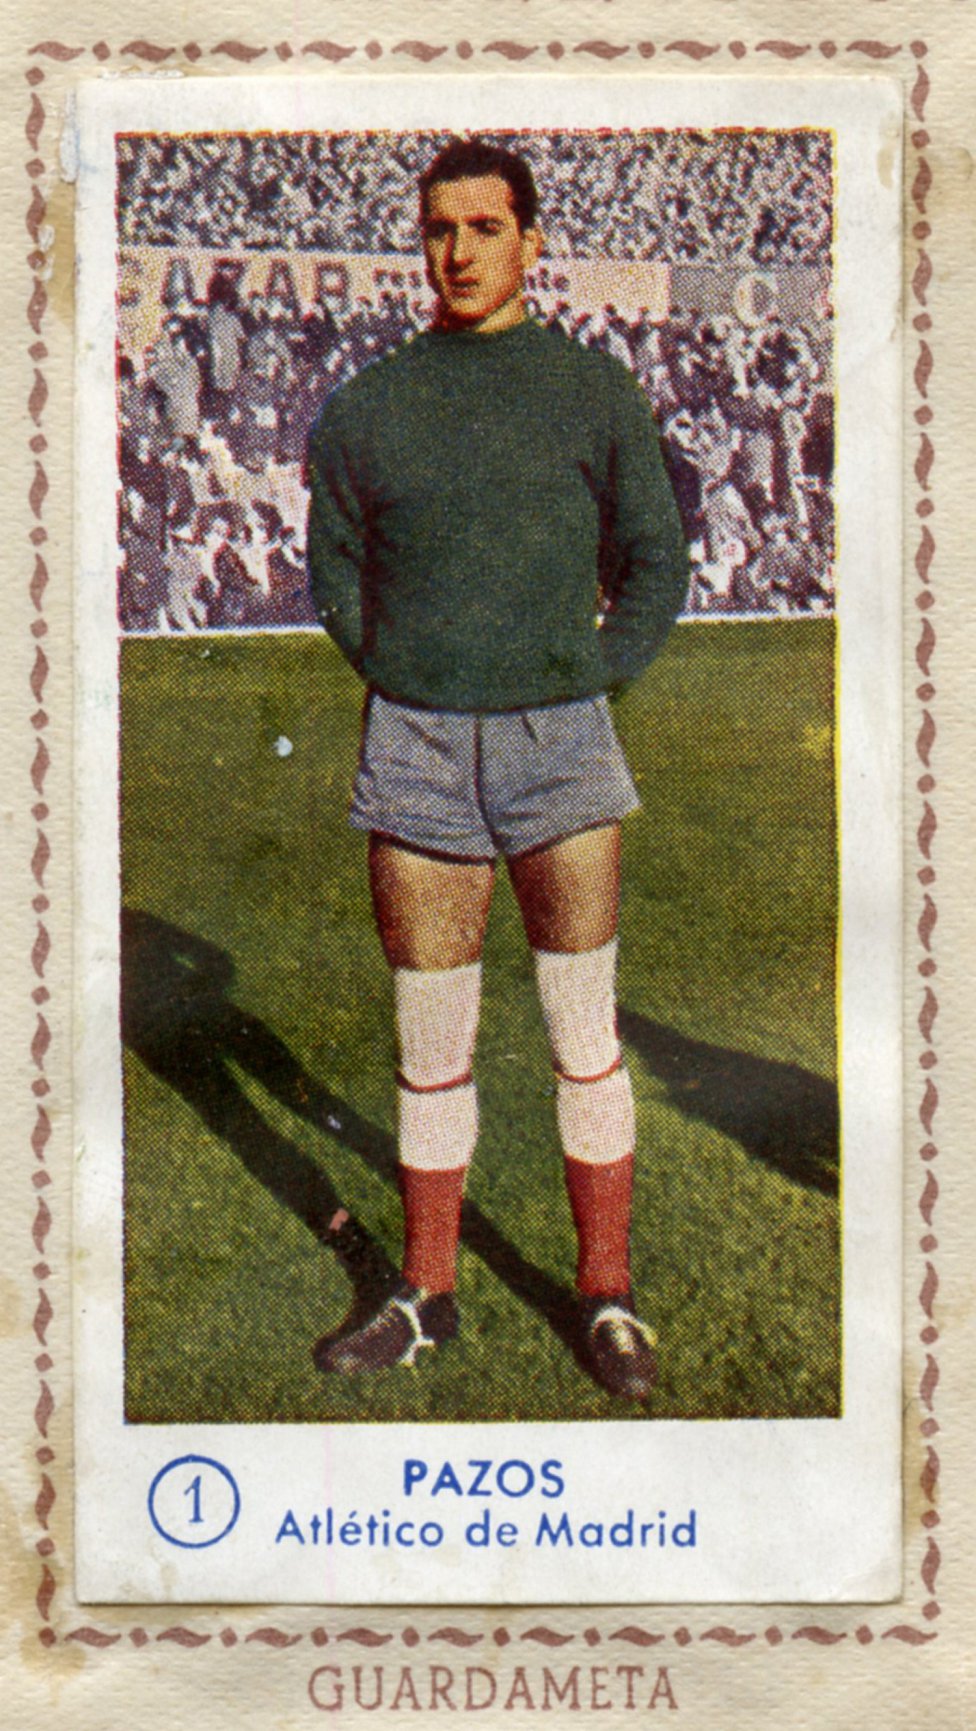 Pazos - Atlético de Madrid (1955-1962) - Elche (1962-1969)